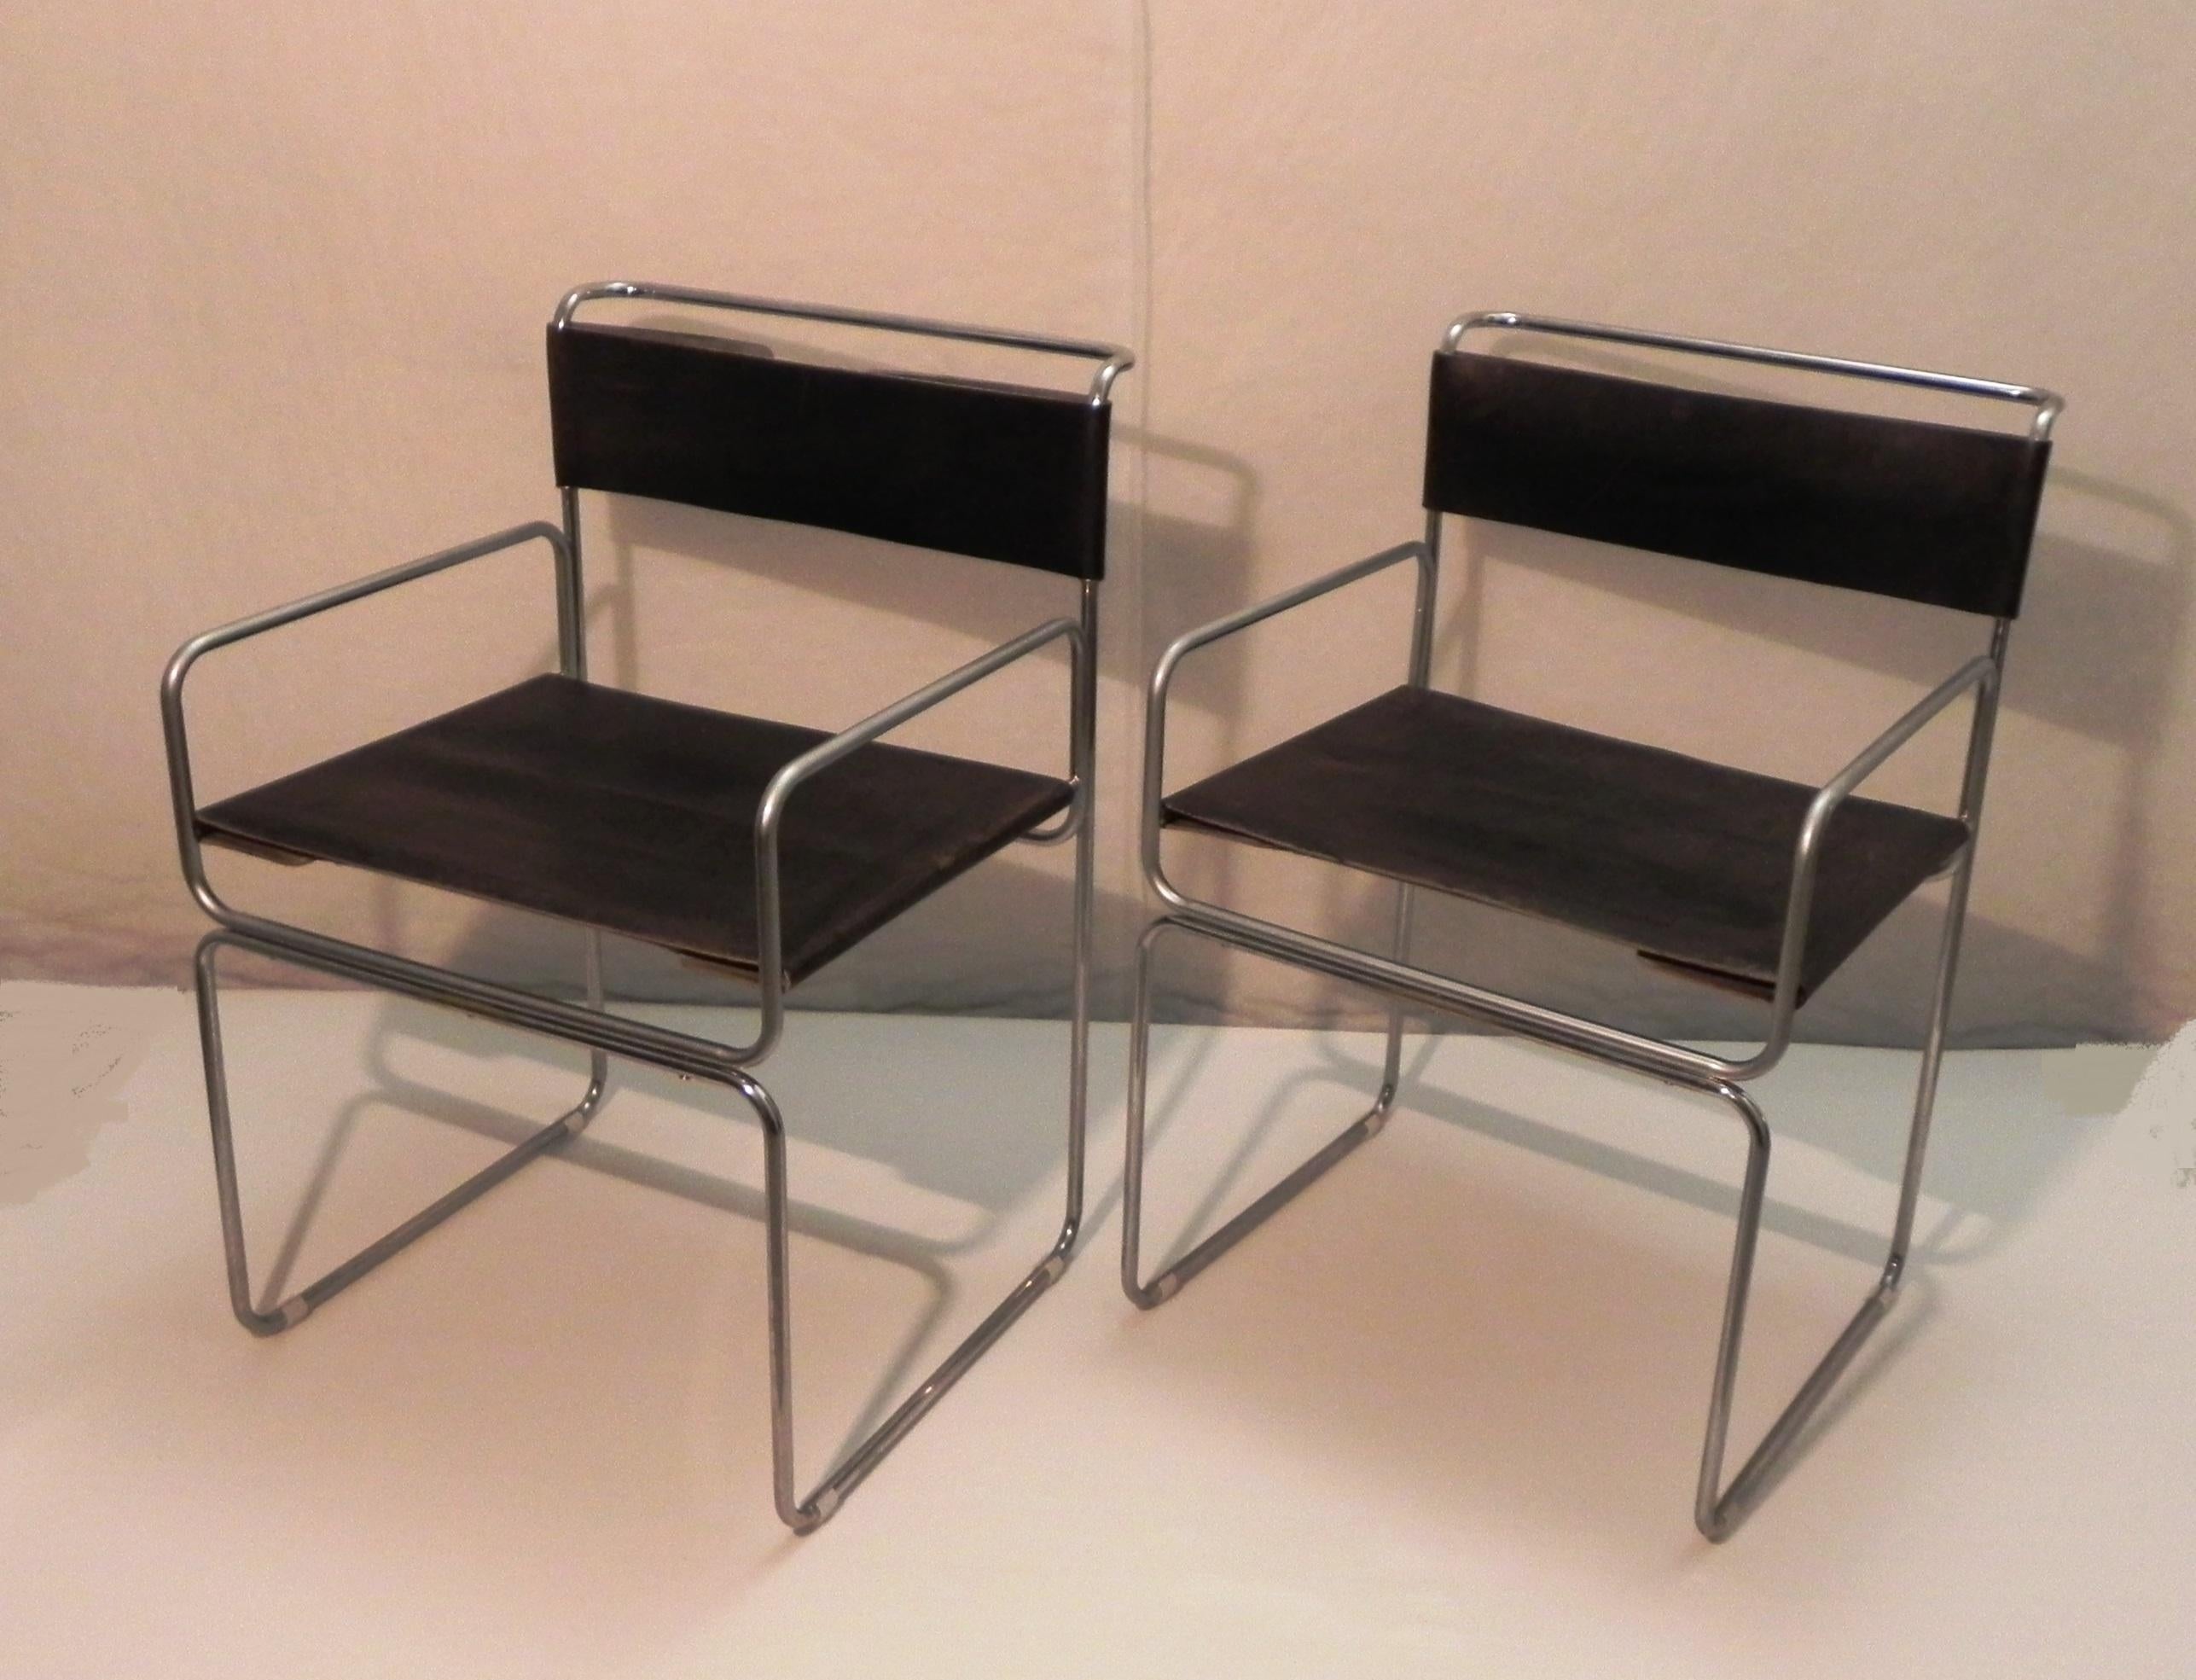 2 poltroncine mod Libellula, produzione Planula anni 60. design by Giovanni Carini. modello raro, con braccioli, piu' larghe .struttura in tubolare cromato, sedile e schienale in cuoio di forte spessore. le sedie sono in buone condizioni. il cuoio